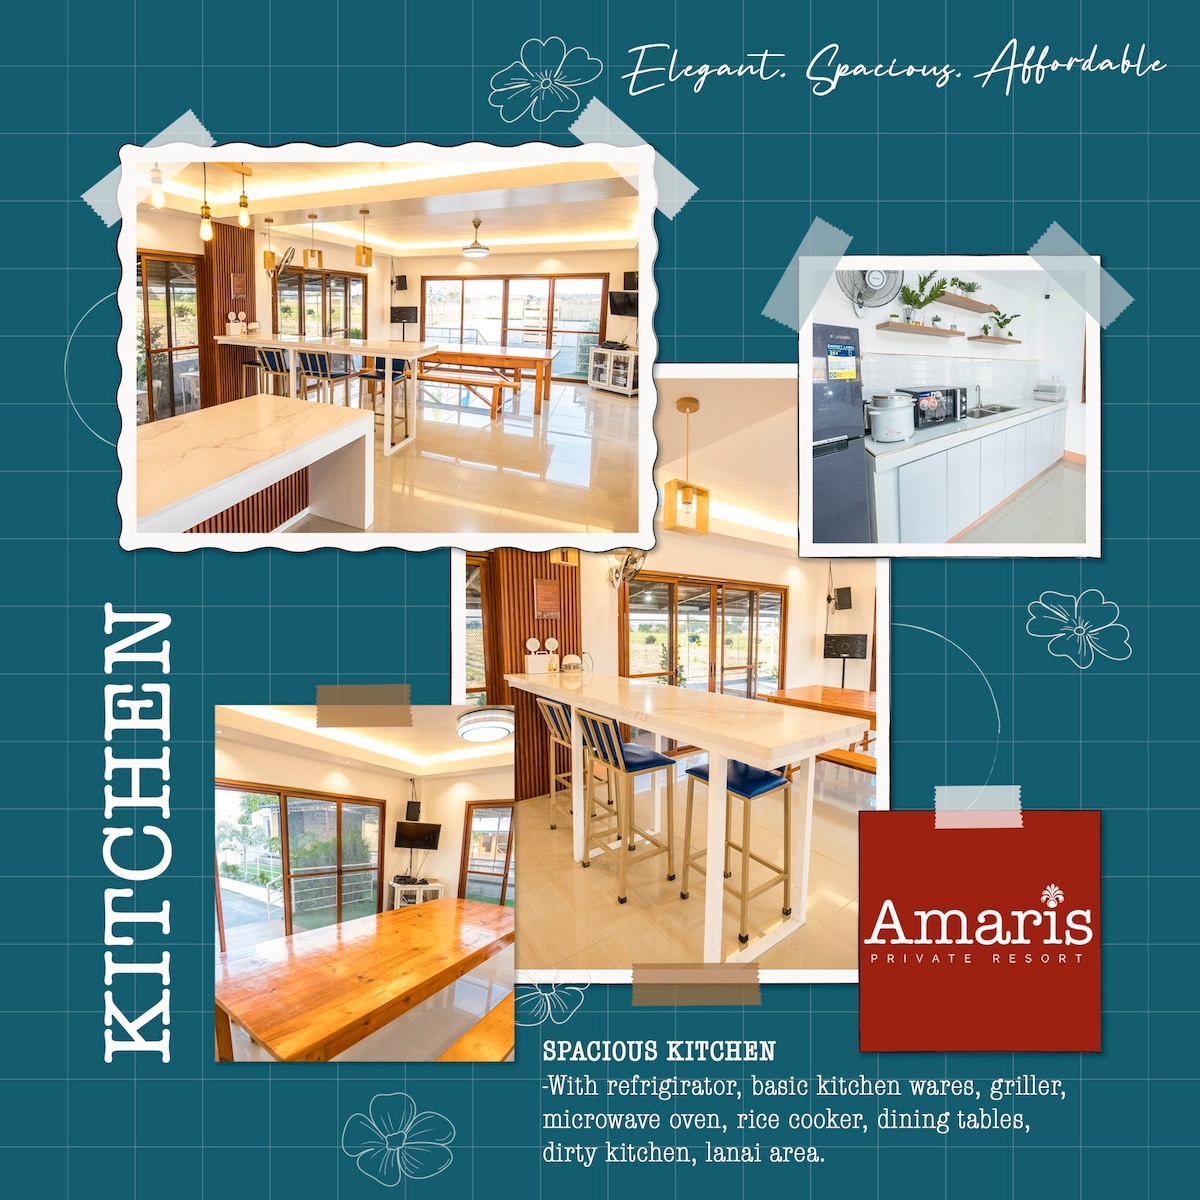 Amaris Private Resort